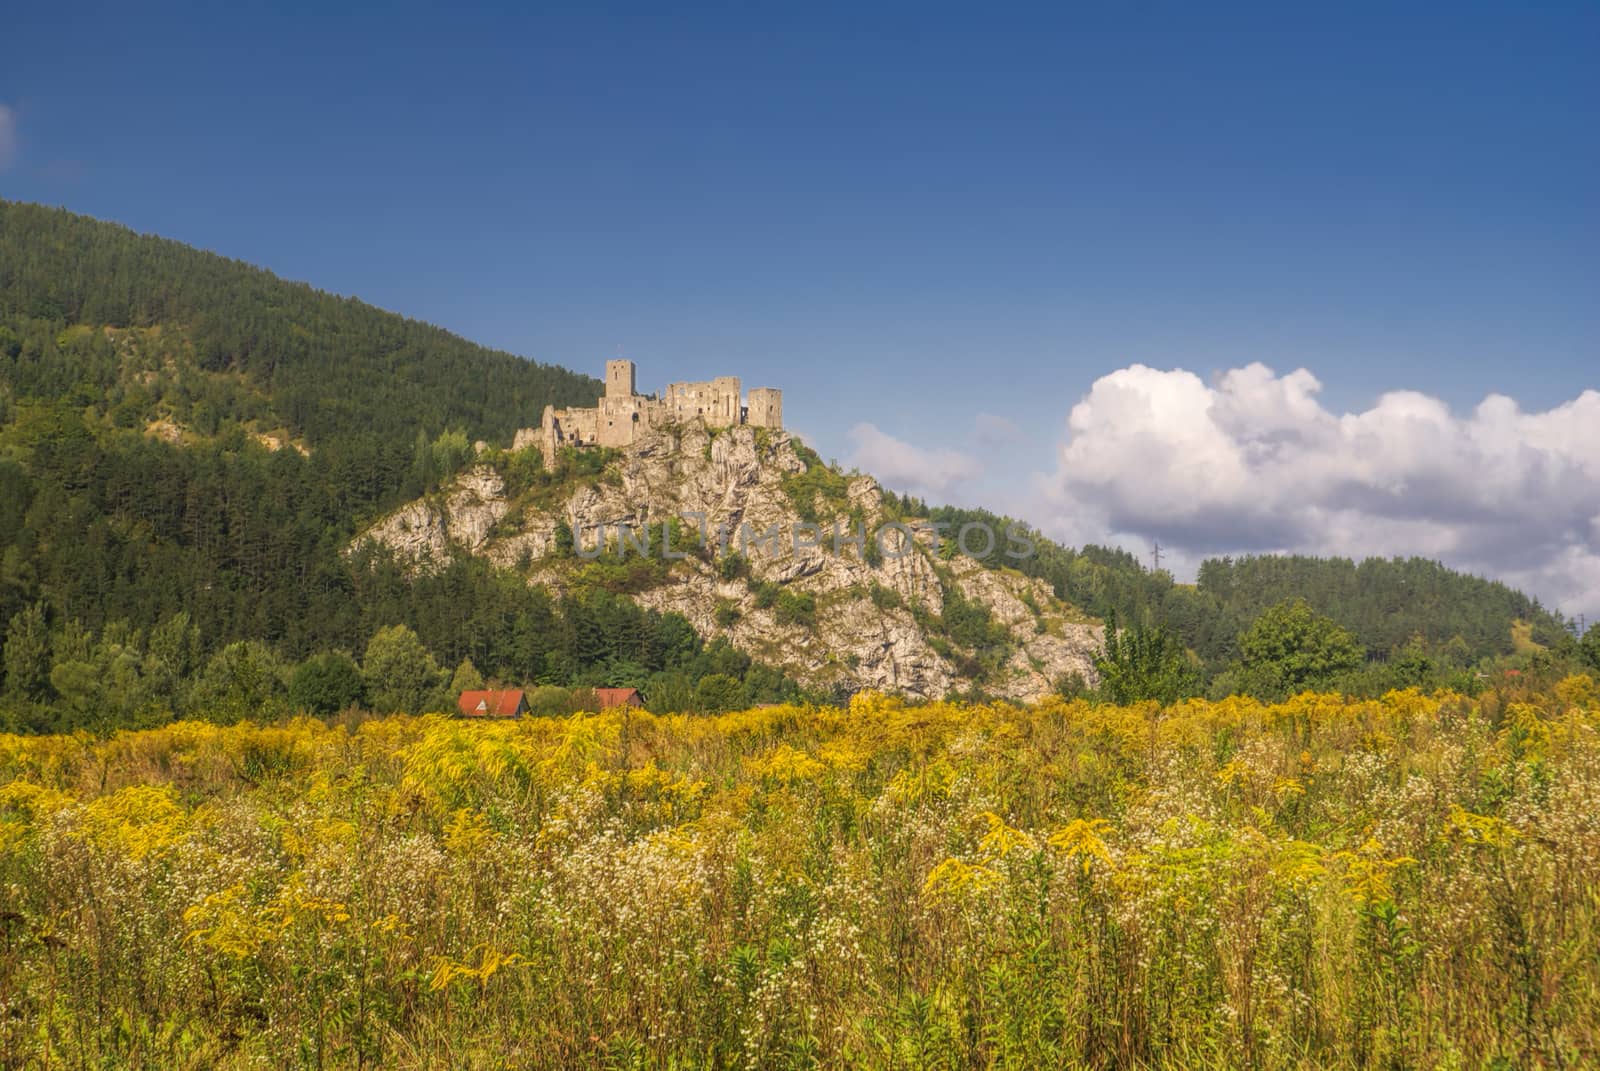 Scenic ruins of strecno castle in Slovakia